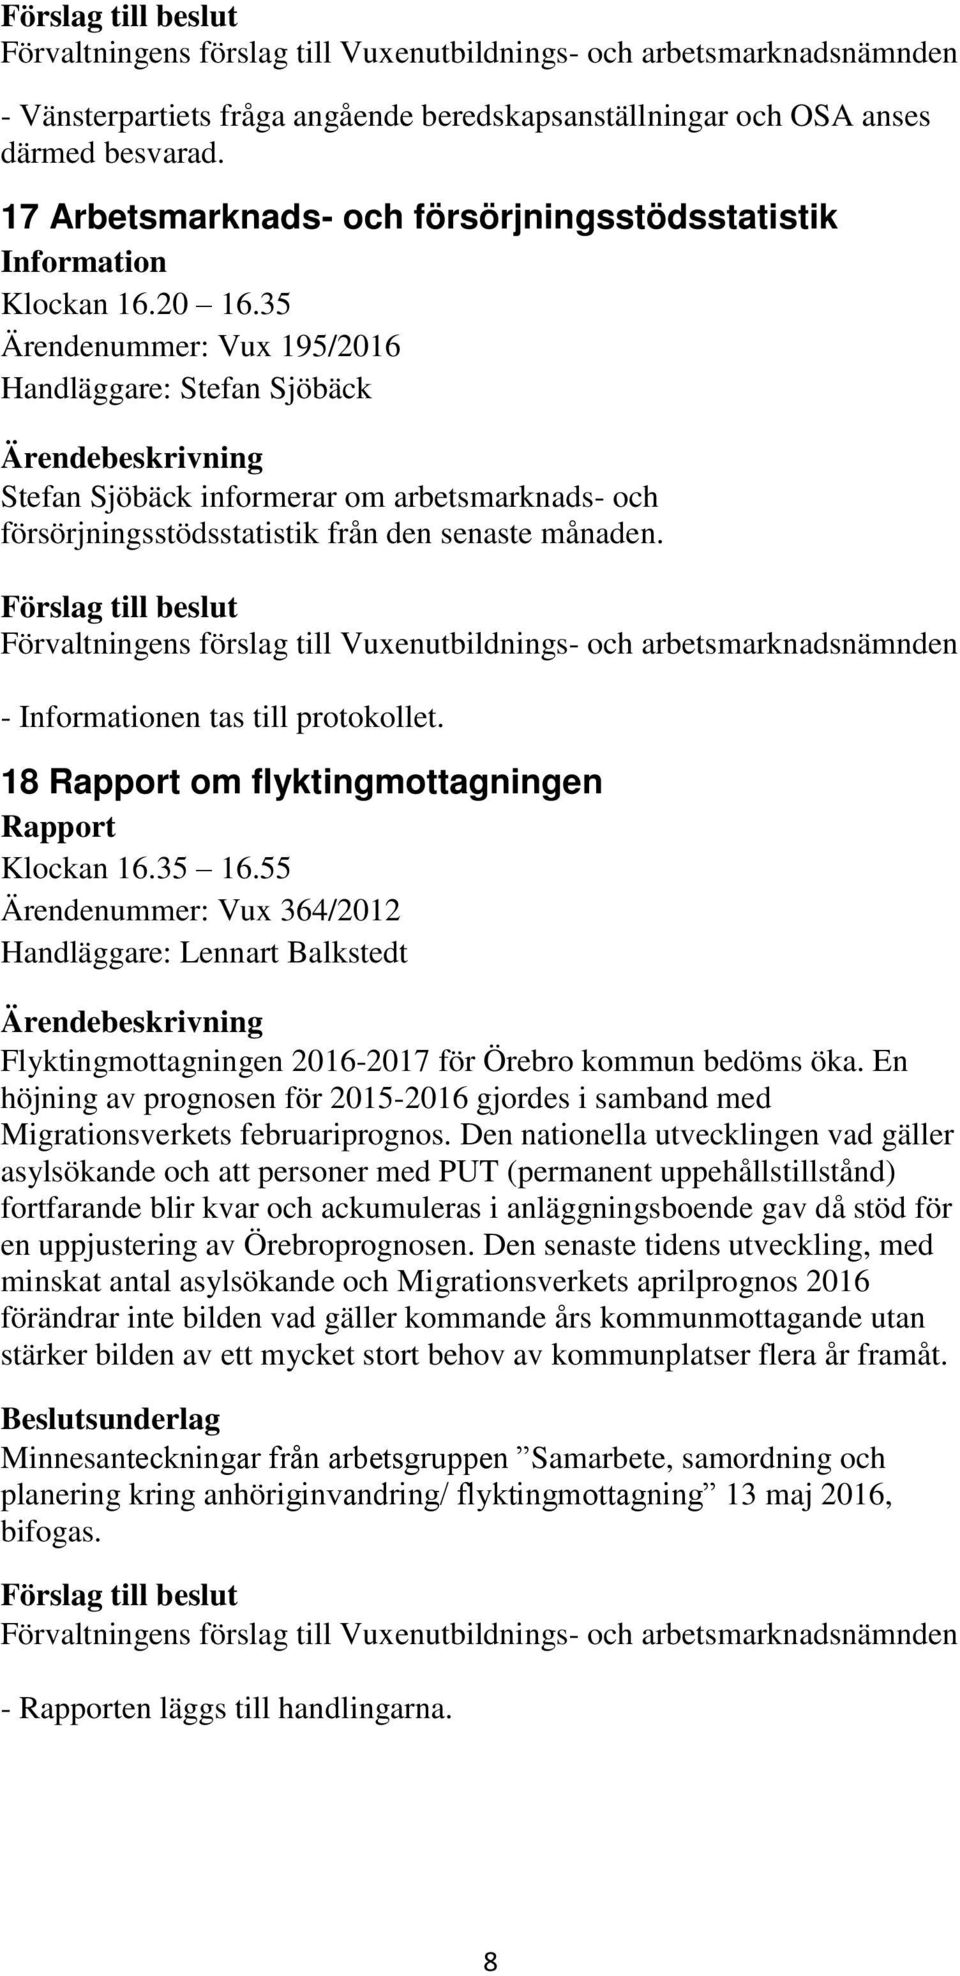 18 Rapport om flyktingmottagningen Rapport Klockan 16.35 16.55 Ärendenummer: Vux 364/2012 Handläggare: Lennart Balkstedt Flyktingmottagningen 2016-2017 för Örebro kommun bedöms öka.